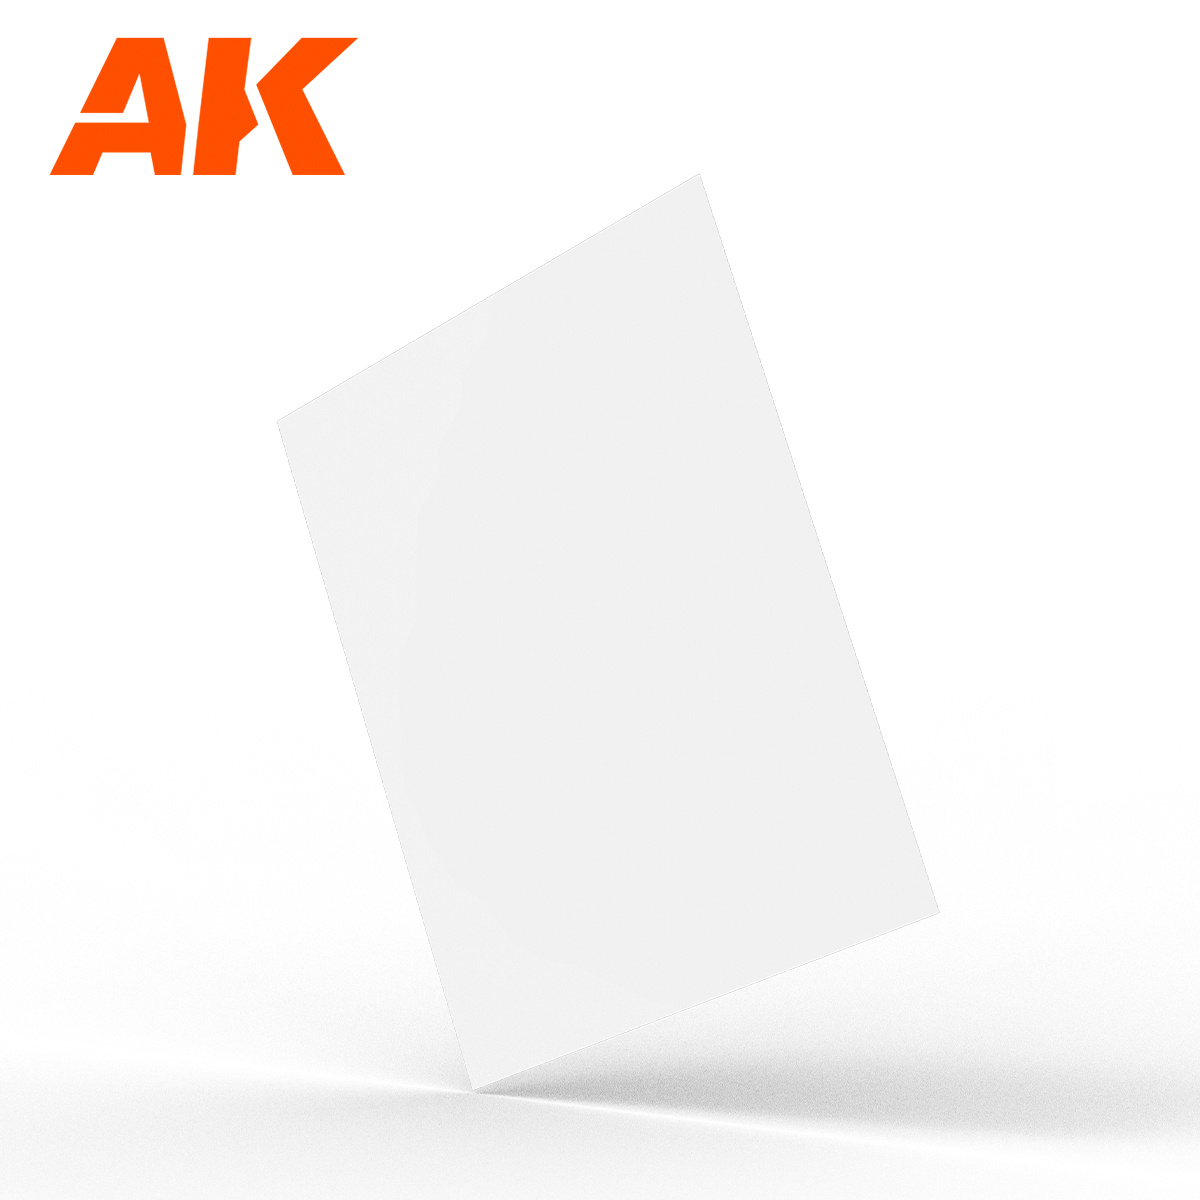 AK-Interactive 3 x 0.5mm thickness x 245 x 195mm - Styrene Sheet - AK-Interactive - AK-6574